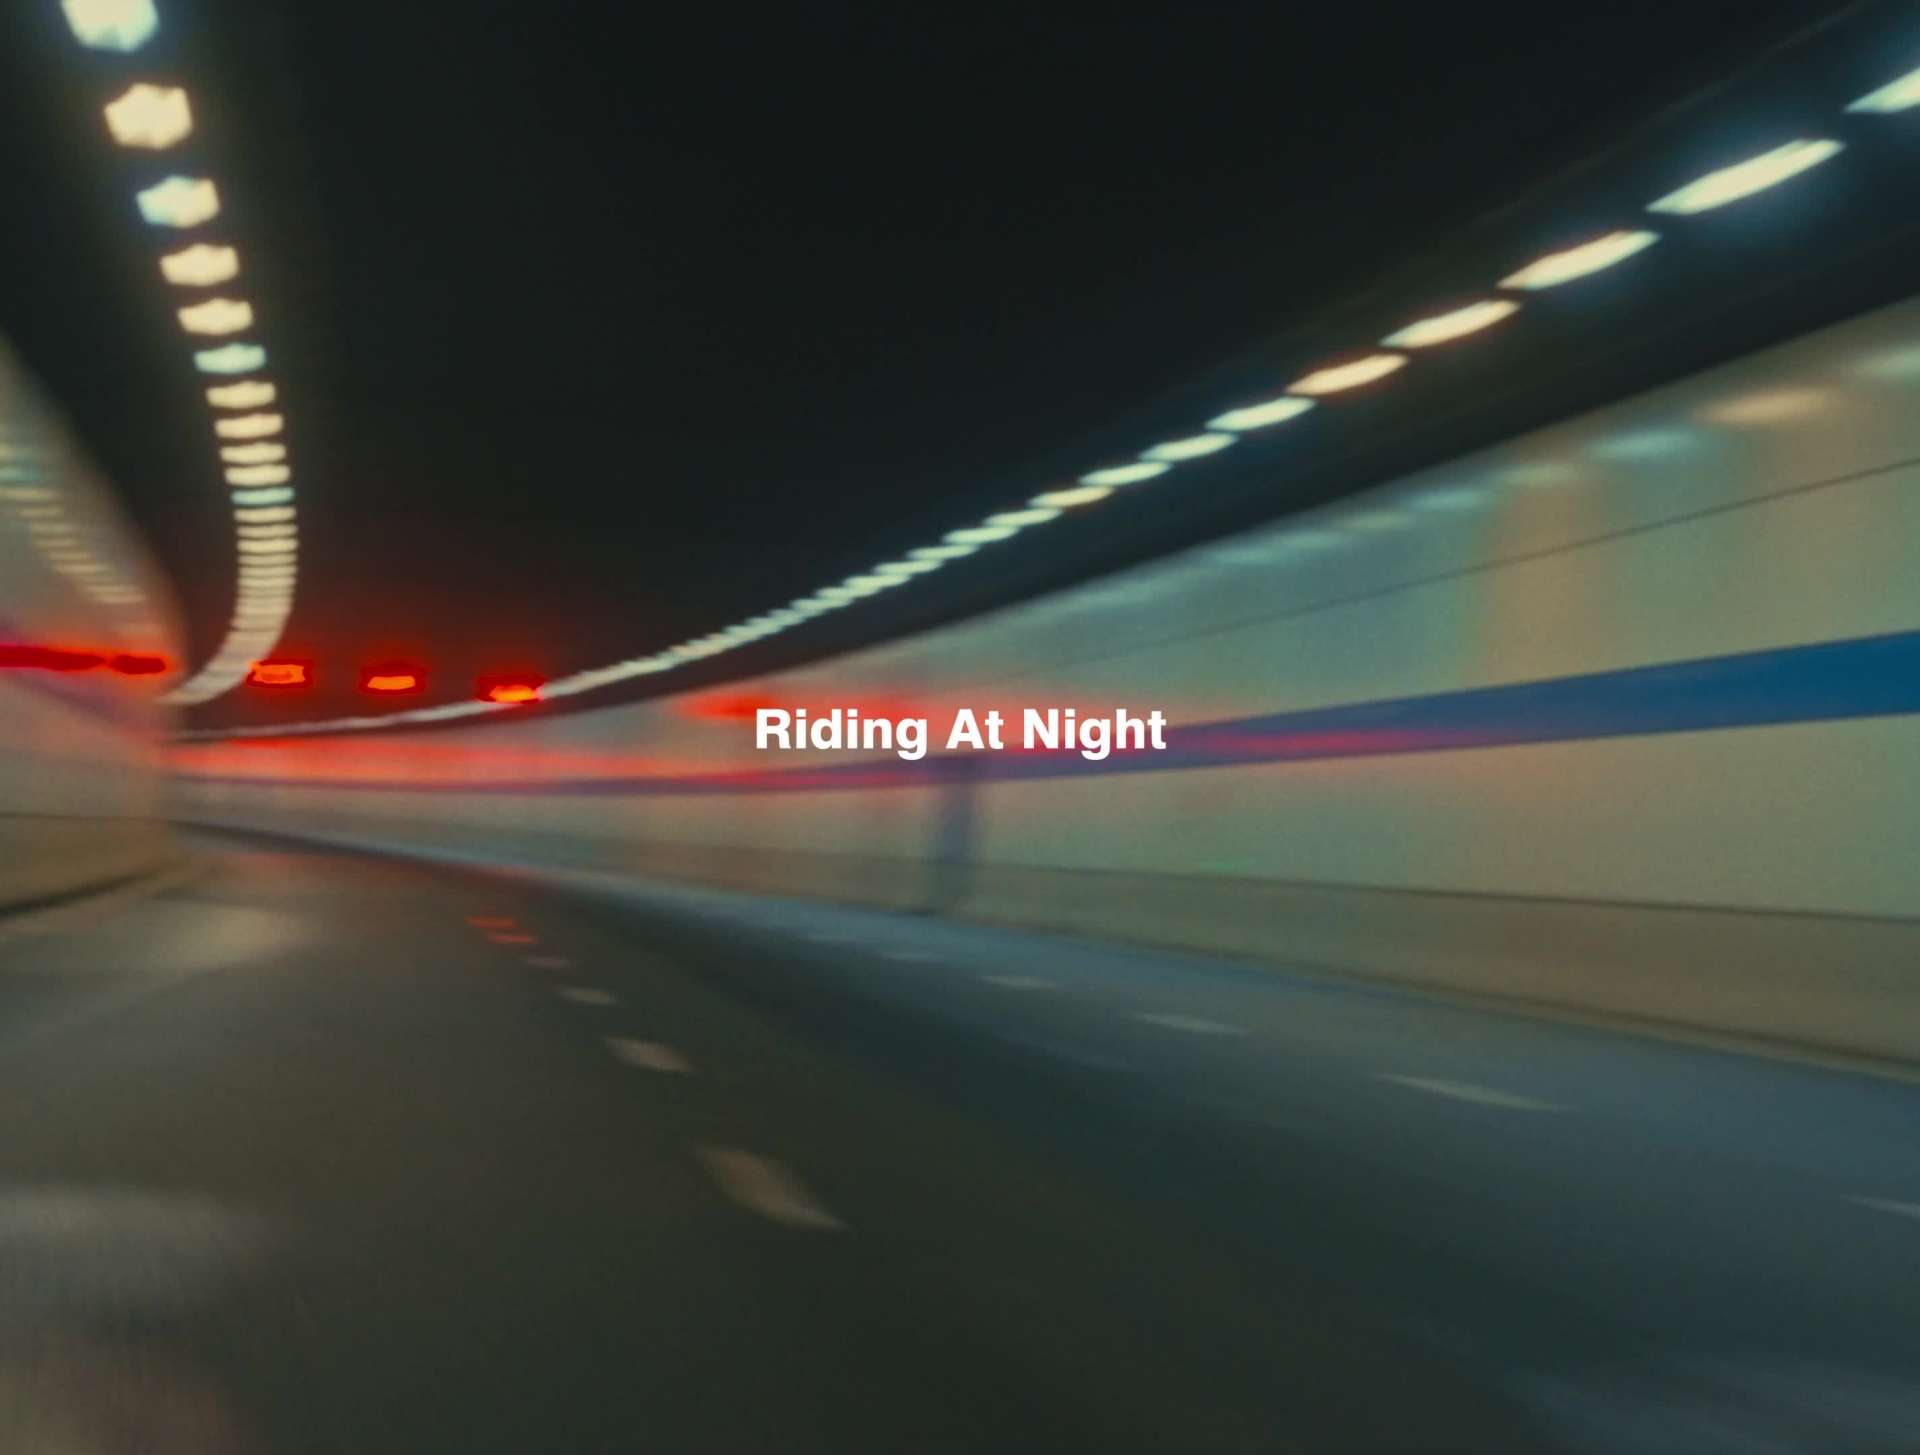 Riding at night